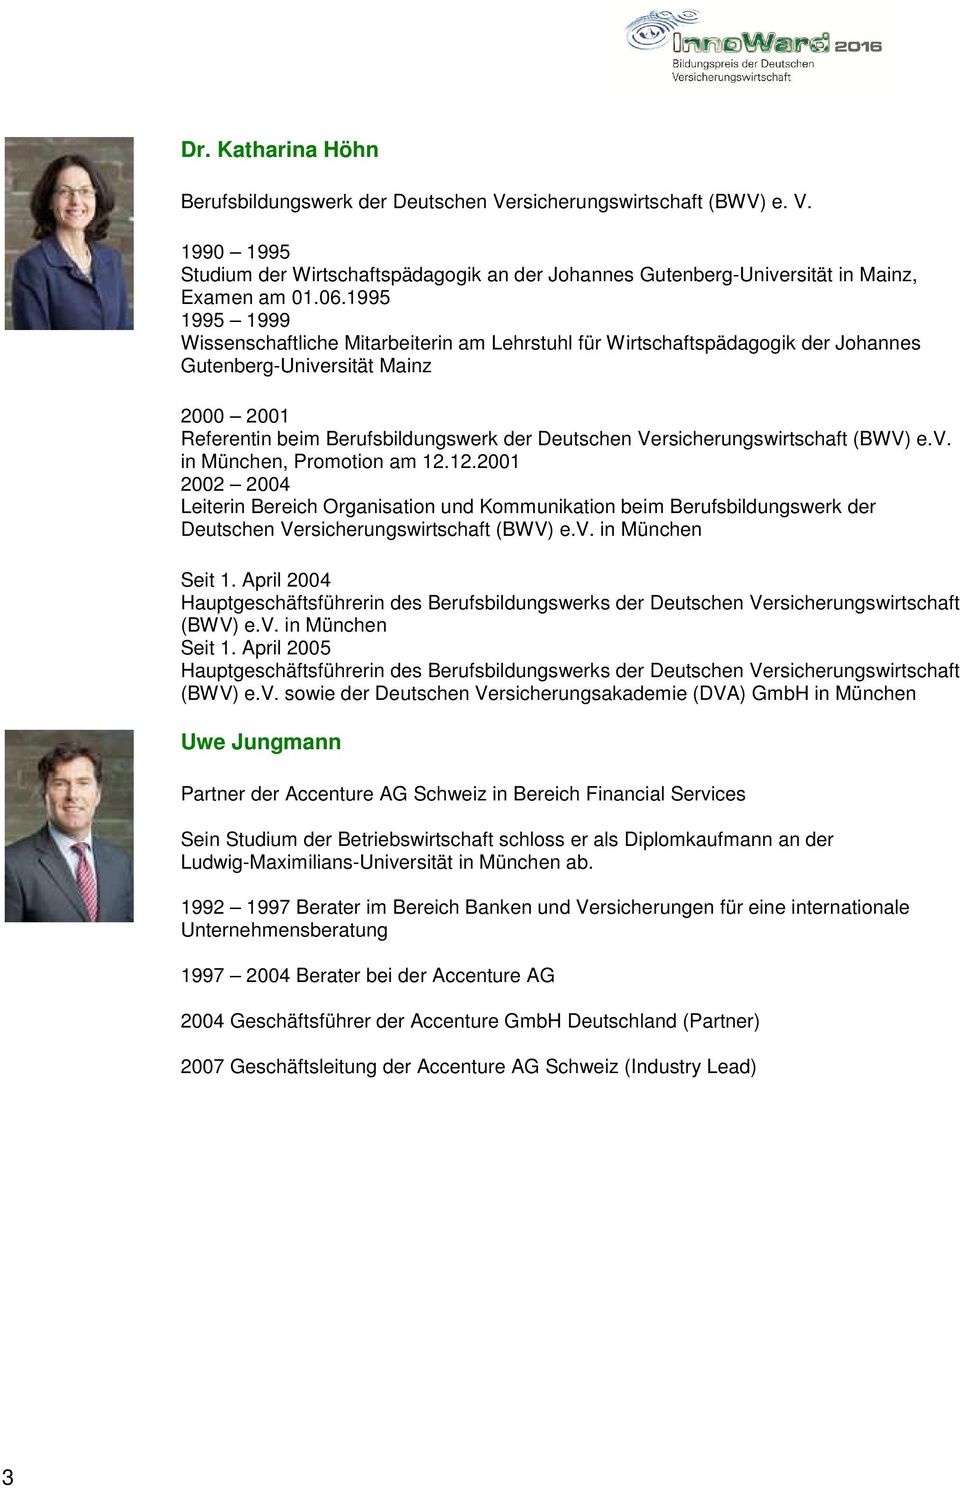 Versicherungswirtschaft (BWV) e.v. in München, Promotion am 12.12.2001 2002 2004 Leiterin Bereich Organisation und Kommunikation beim Berufsbildungswerk der Deutschen Versicherungswirtschaft (BWV) e.